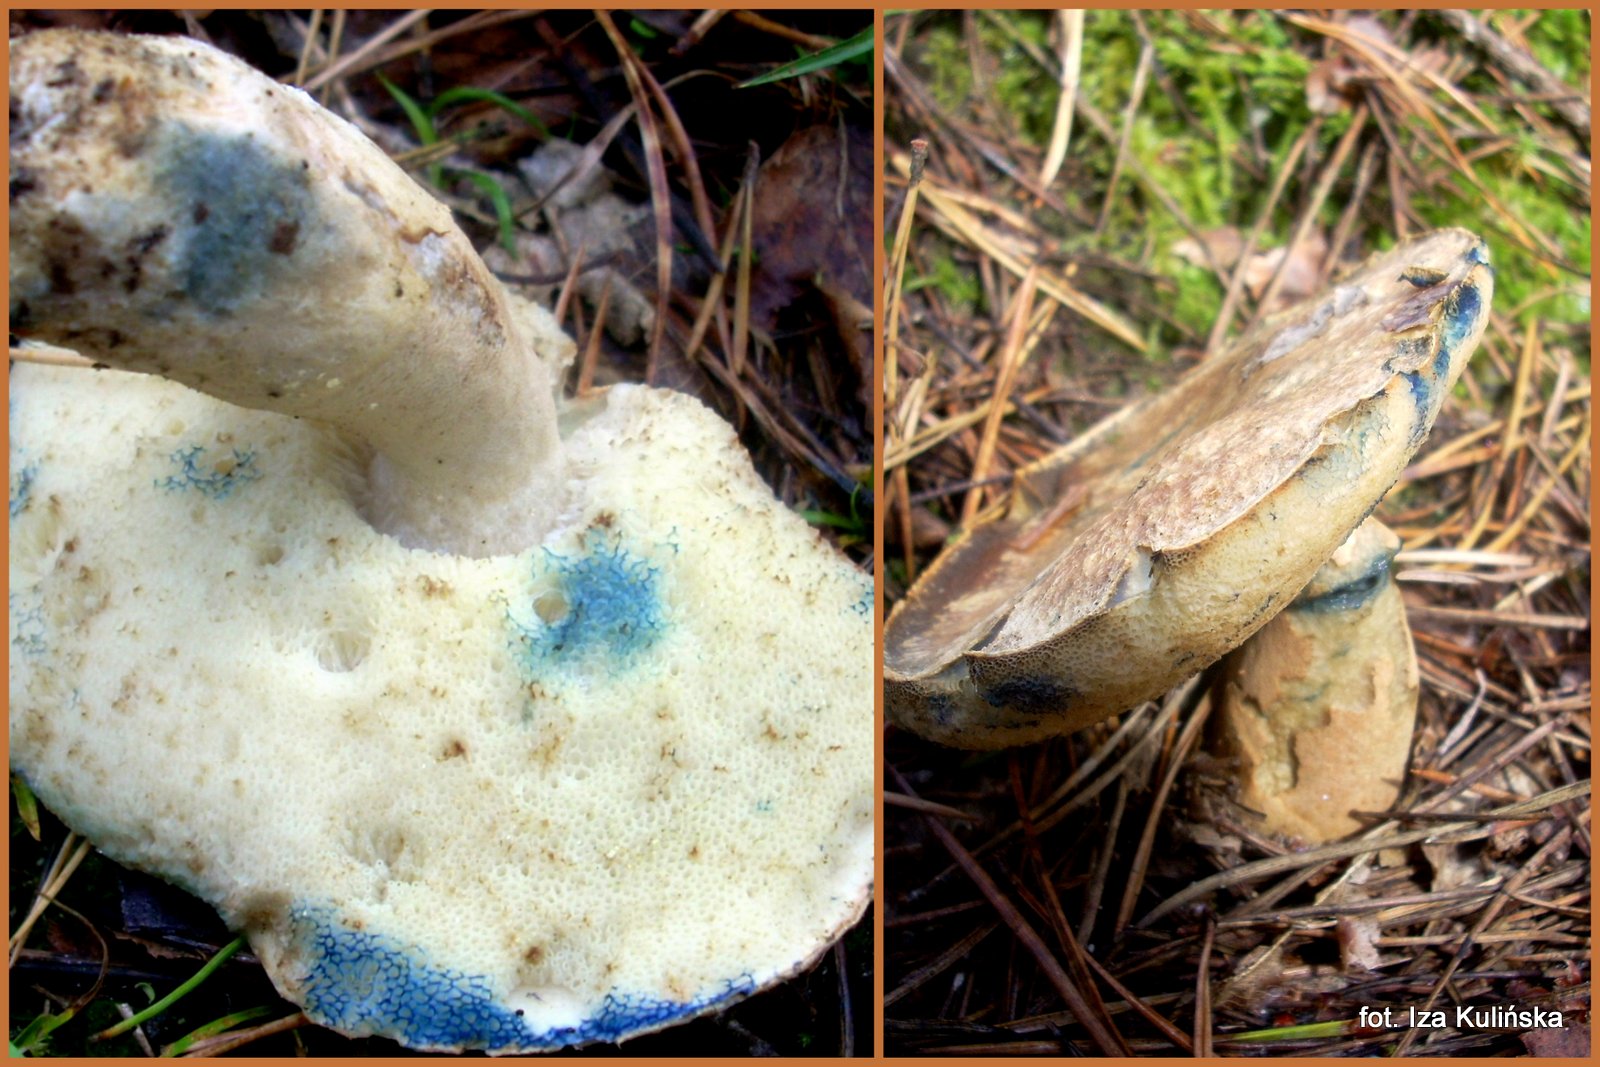 piaskowiec-modrzak-ciekawy-grzyb-jadalny-kt-ry-sinieje-na-niebiesko